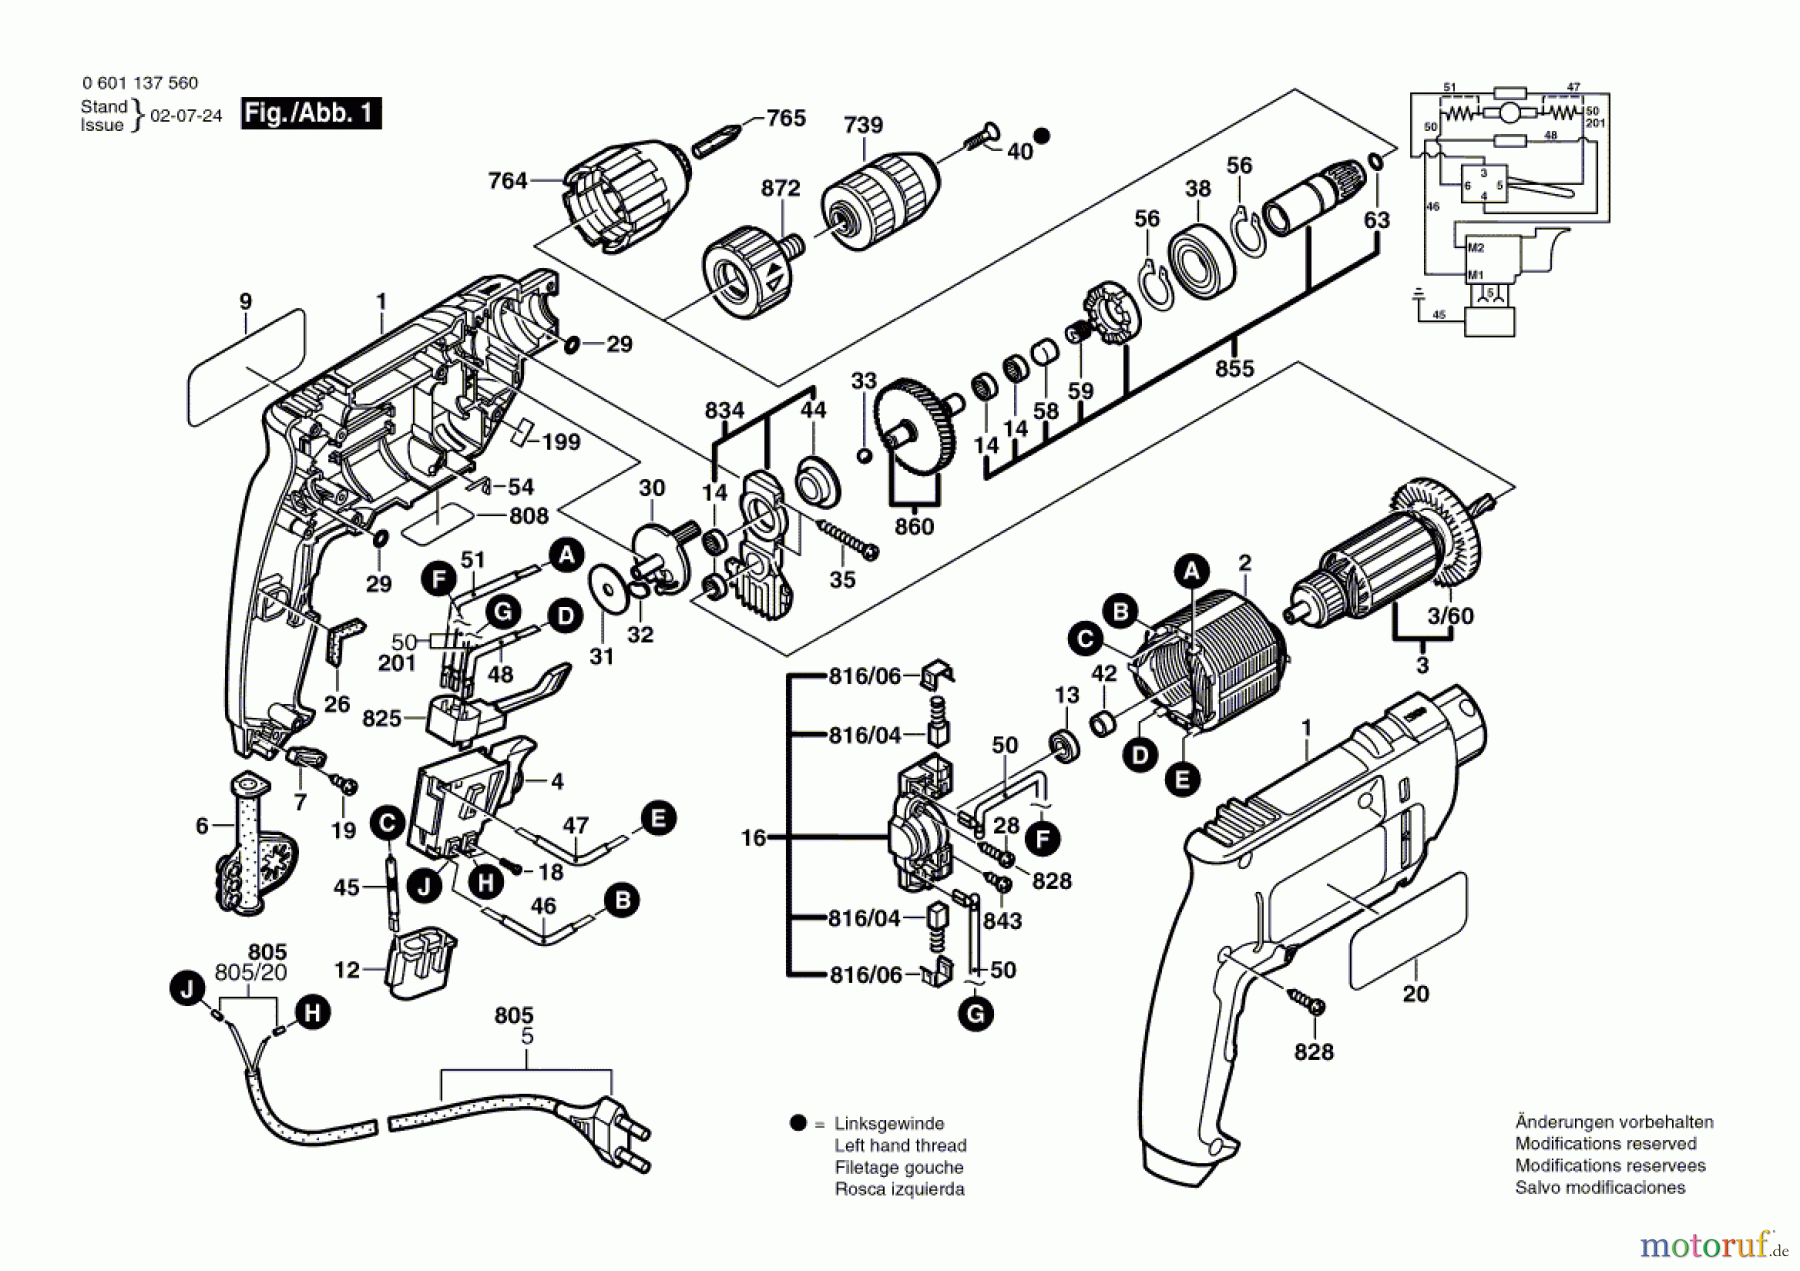  Bosch Werkzeug Bohrmaschine GBM 10 SRE Seite 1